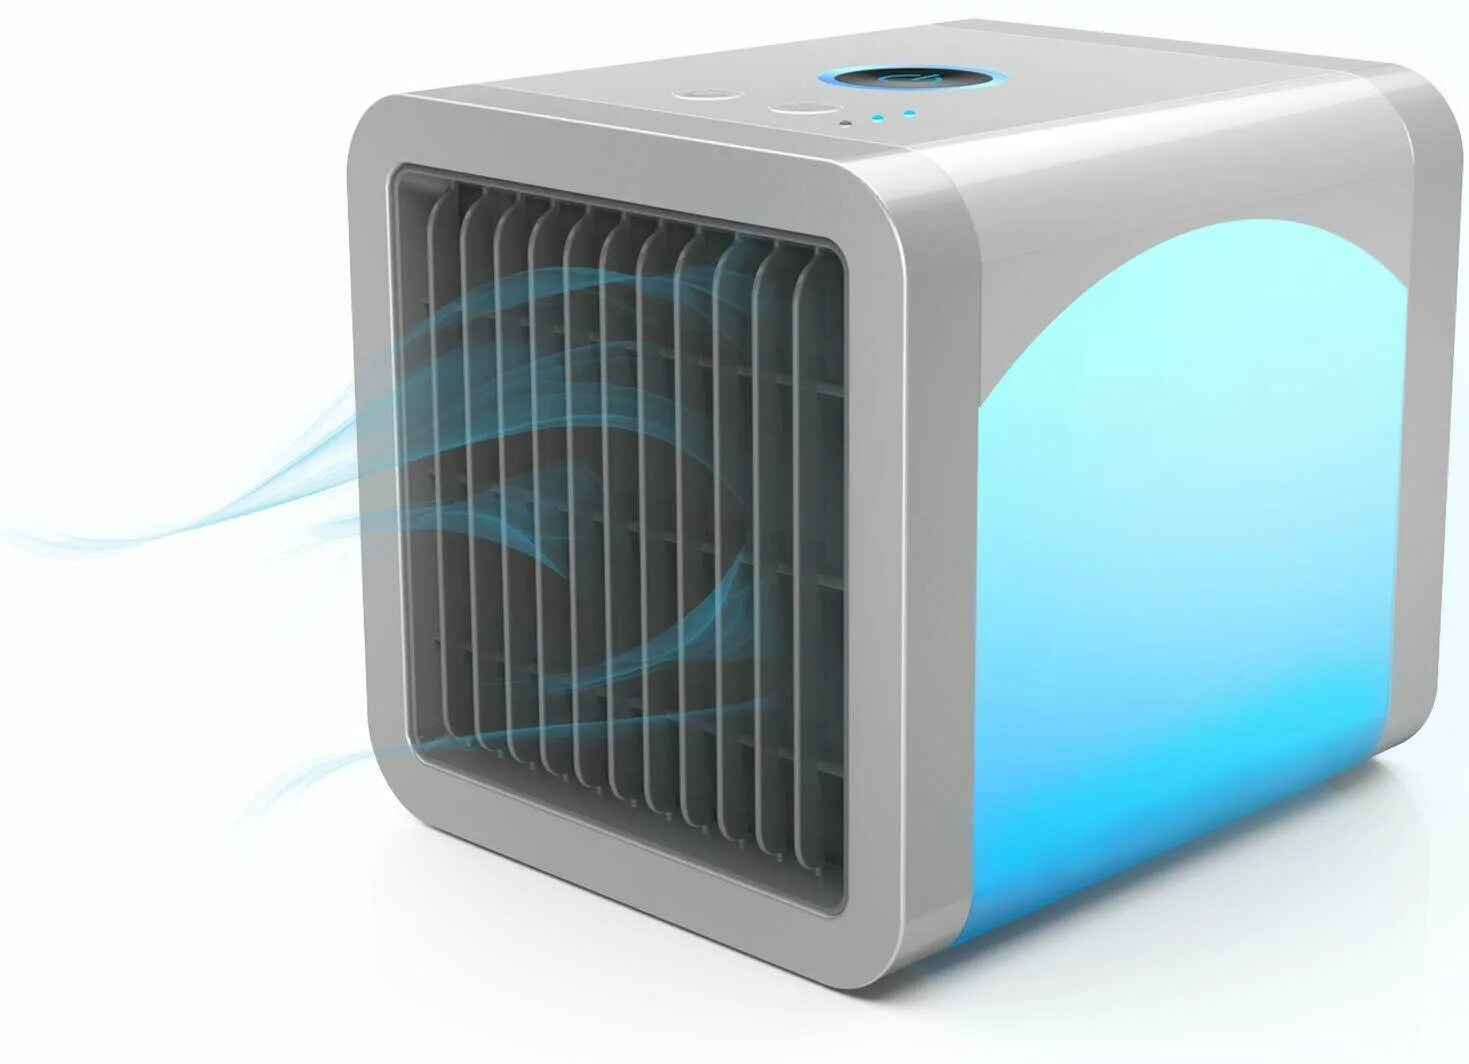 Кондиционер для охлаждения воздуха. Портативный кондиционер / Portable AC. Small Portable Air Conditioner. Охладитель воздуха Air Cooler. Portable Air Cooler.